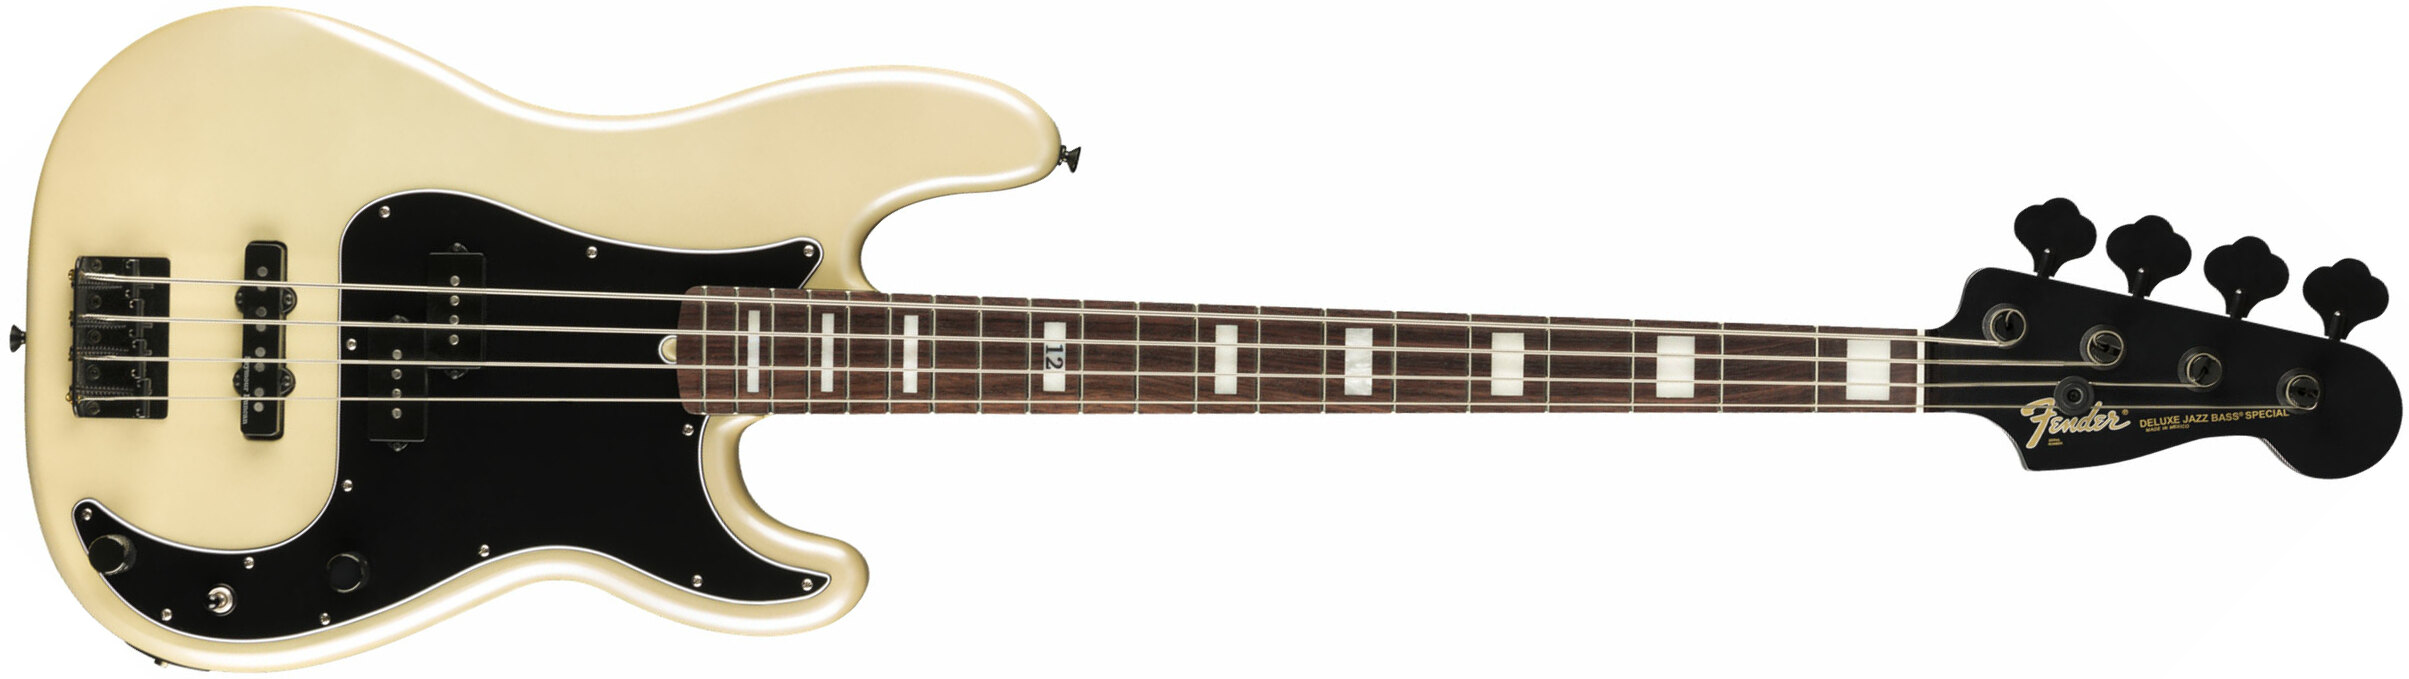 Fender Duff Mckagan Precision Bass Deluxe Signature Rw - White Pearl - Solid body elektrische bas - Main picture